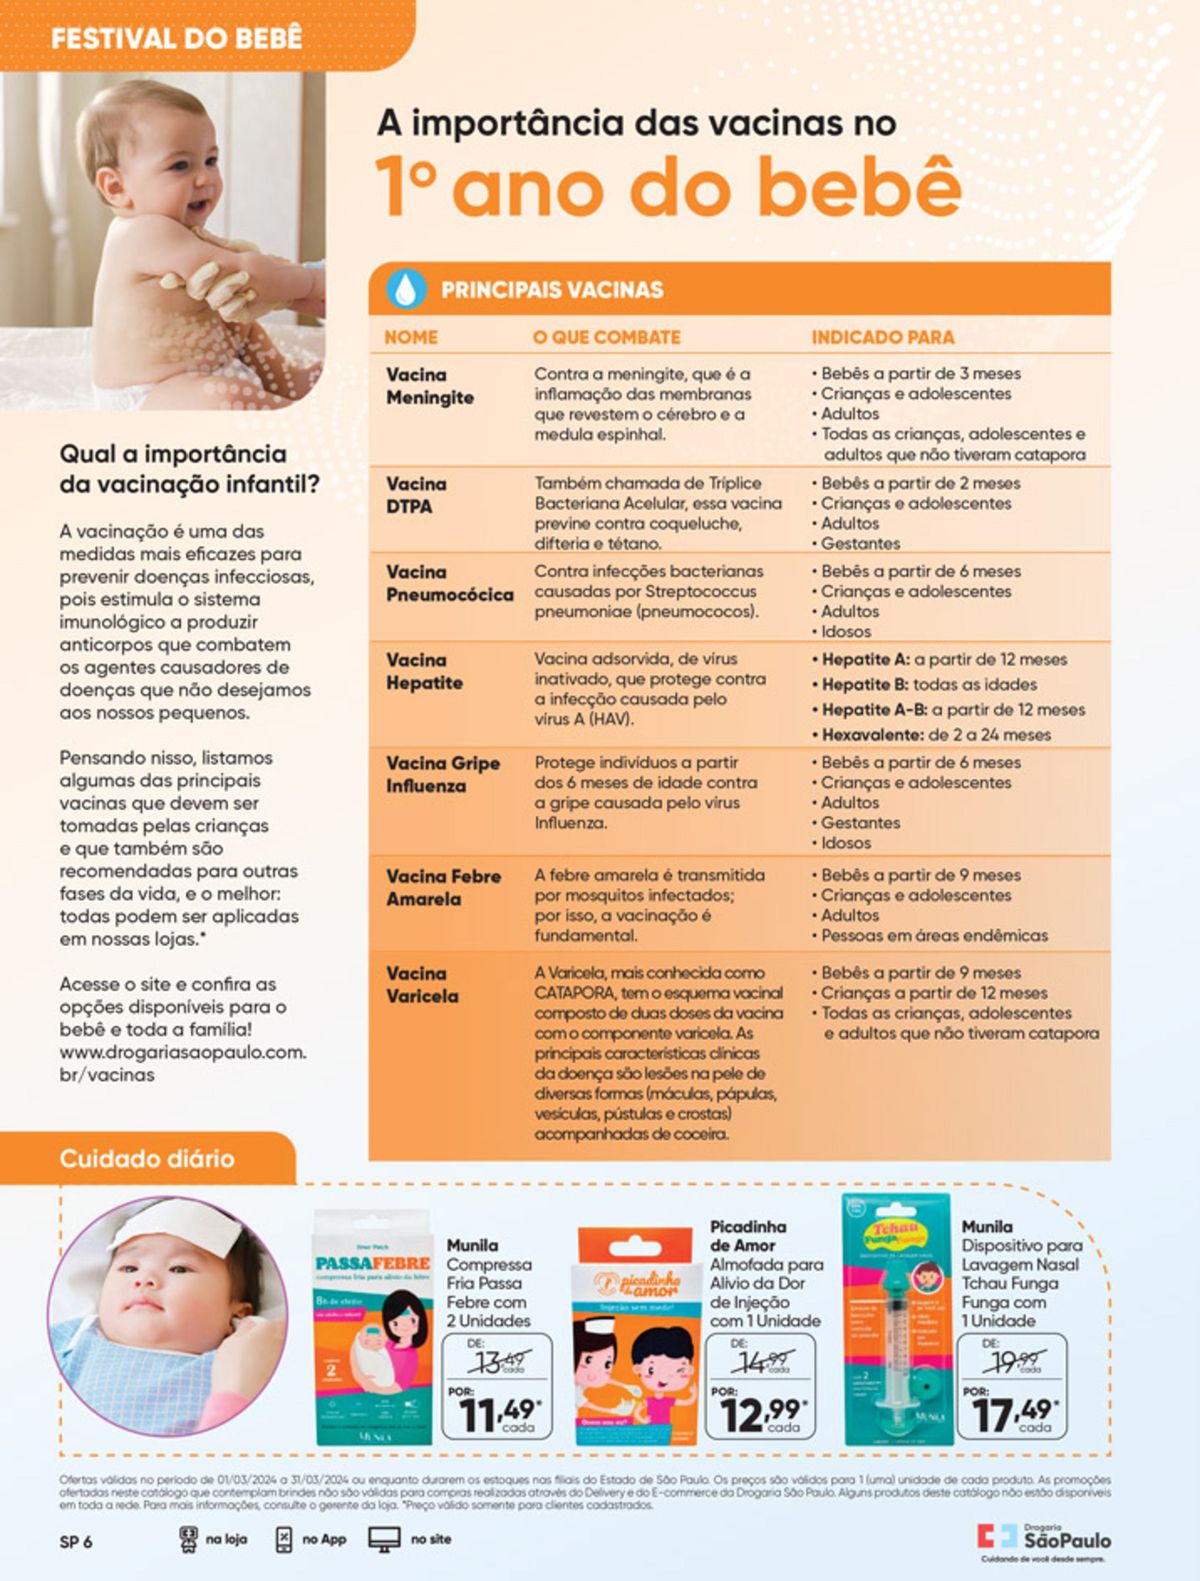 Principais vacinas para crianças e família